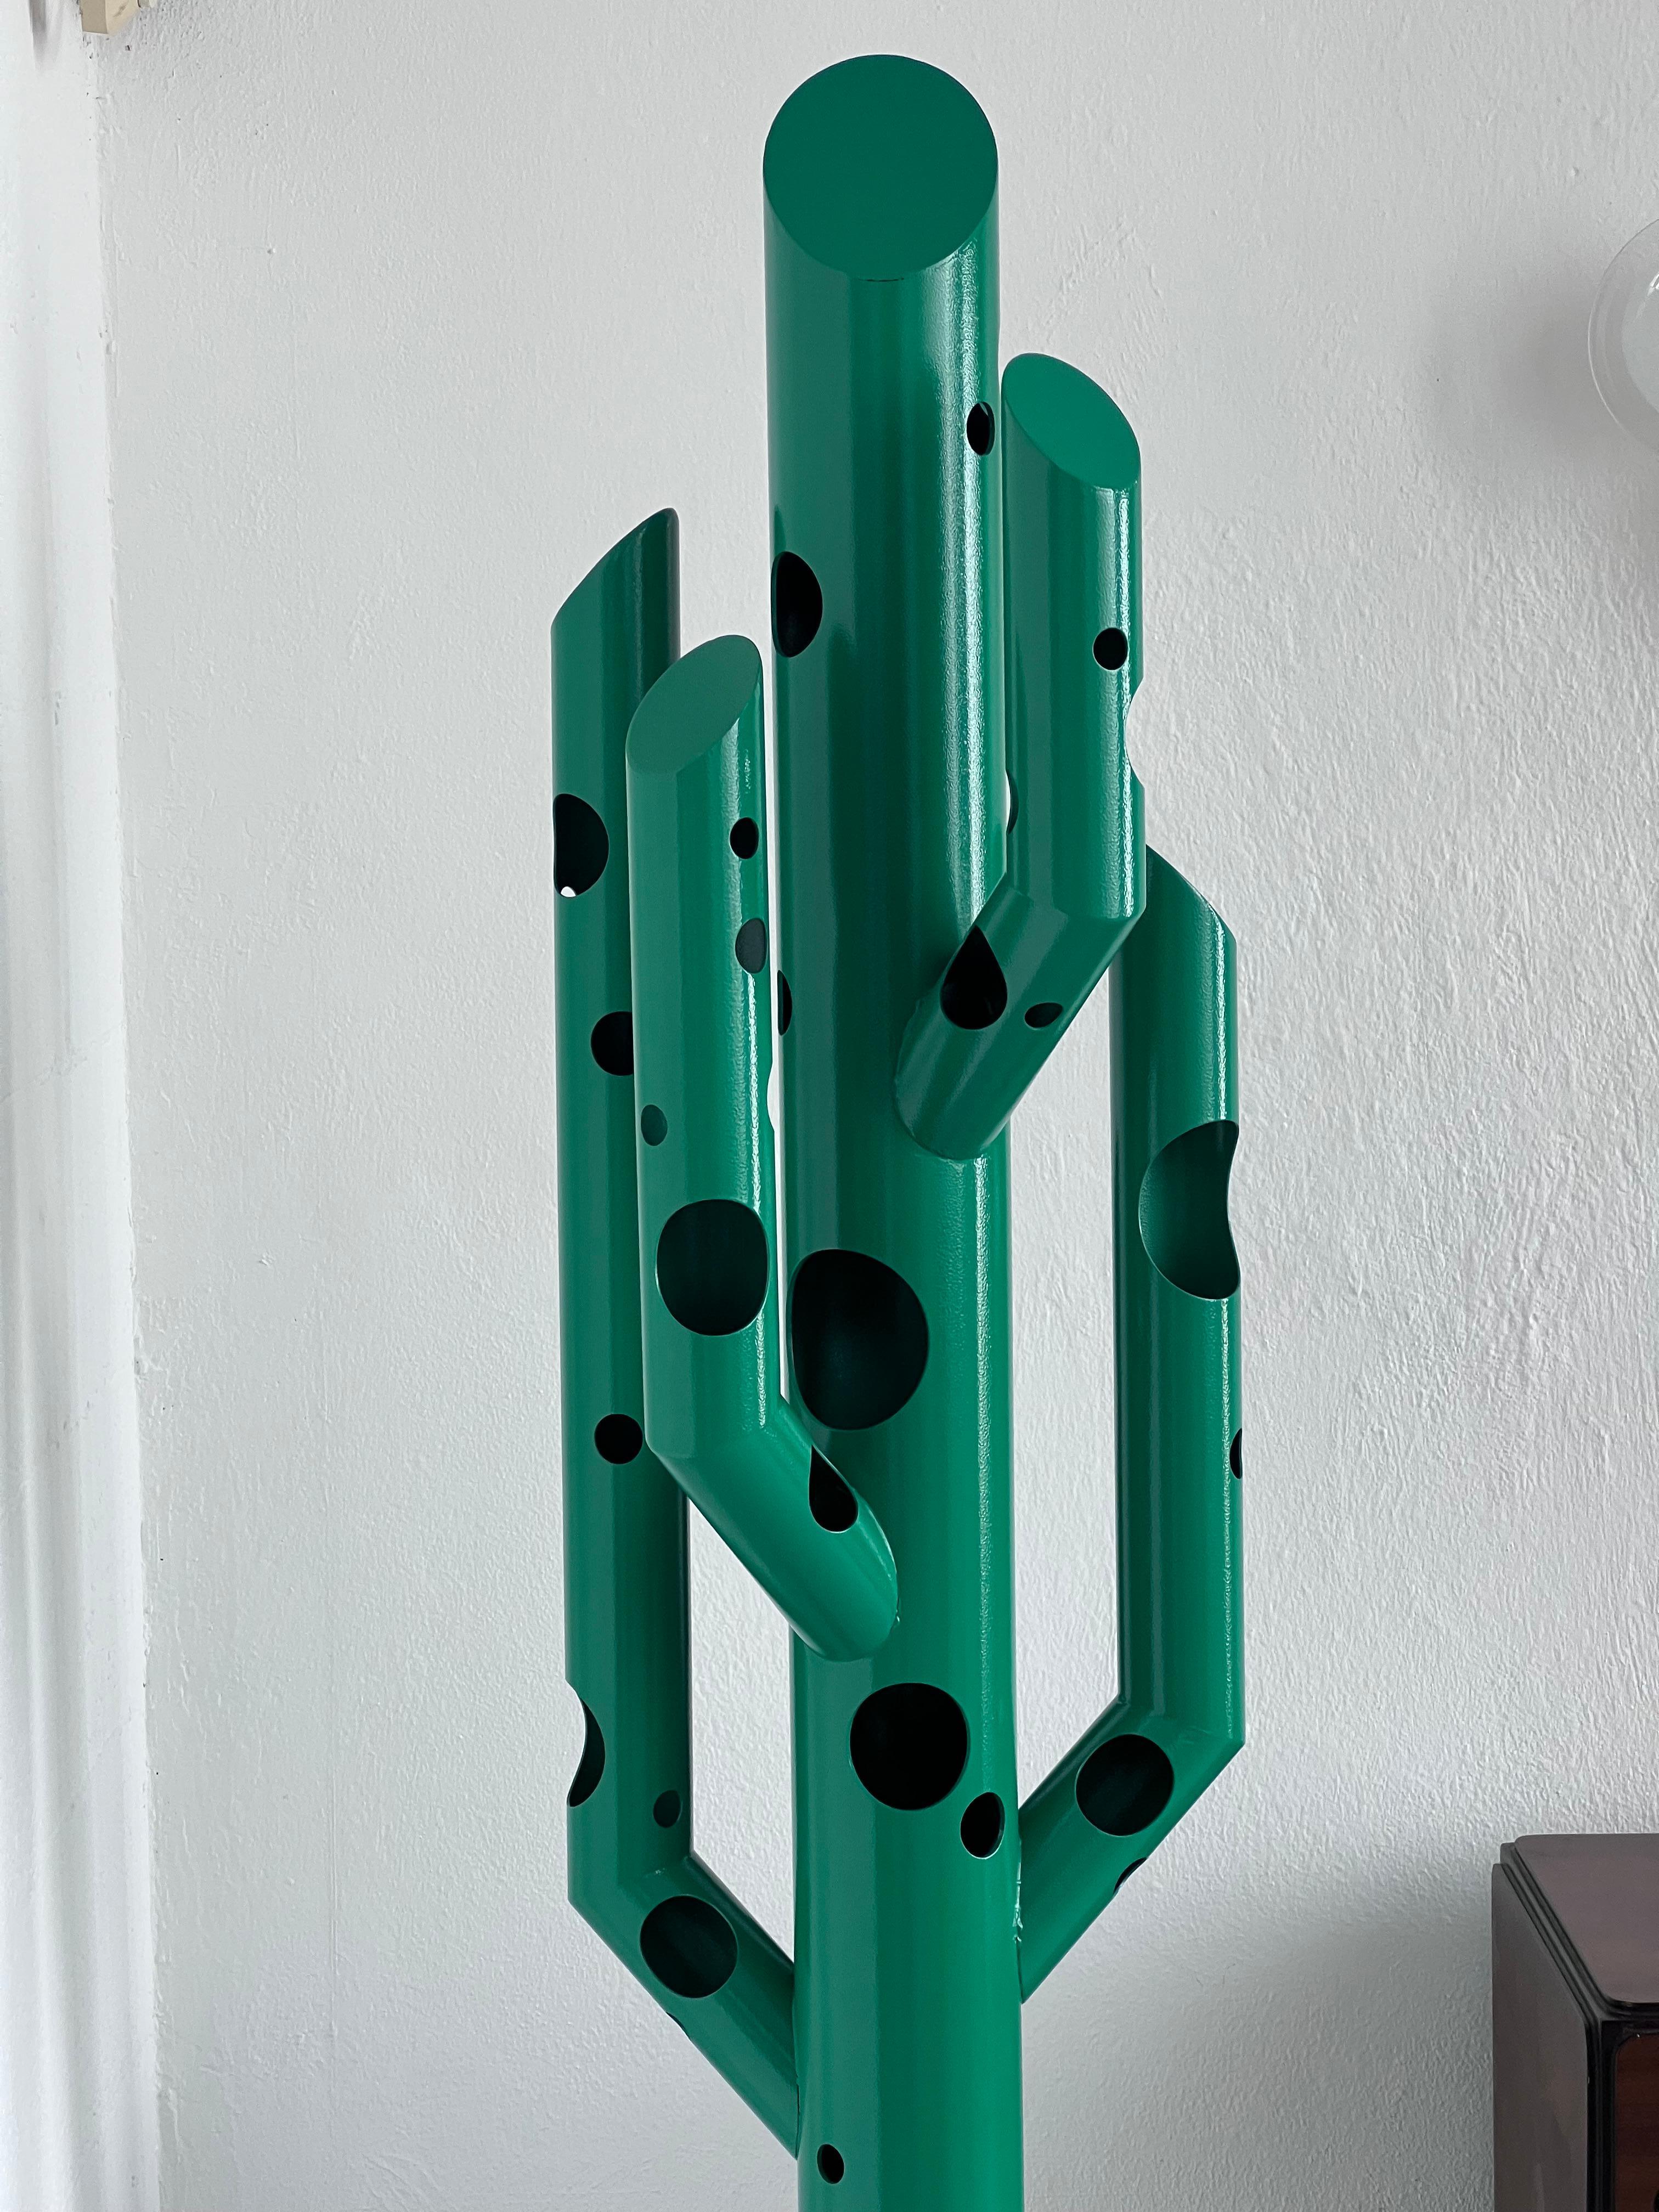 Cactus Contemporary Sculpture in Grün, Spinzi Silös, Italienisches Sammlerstück Design im Angebot 1